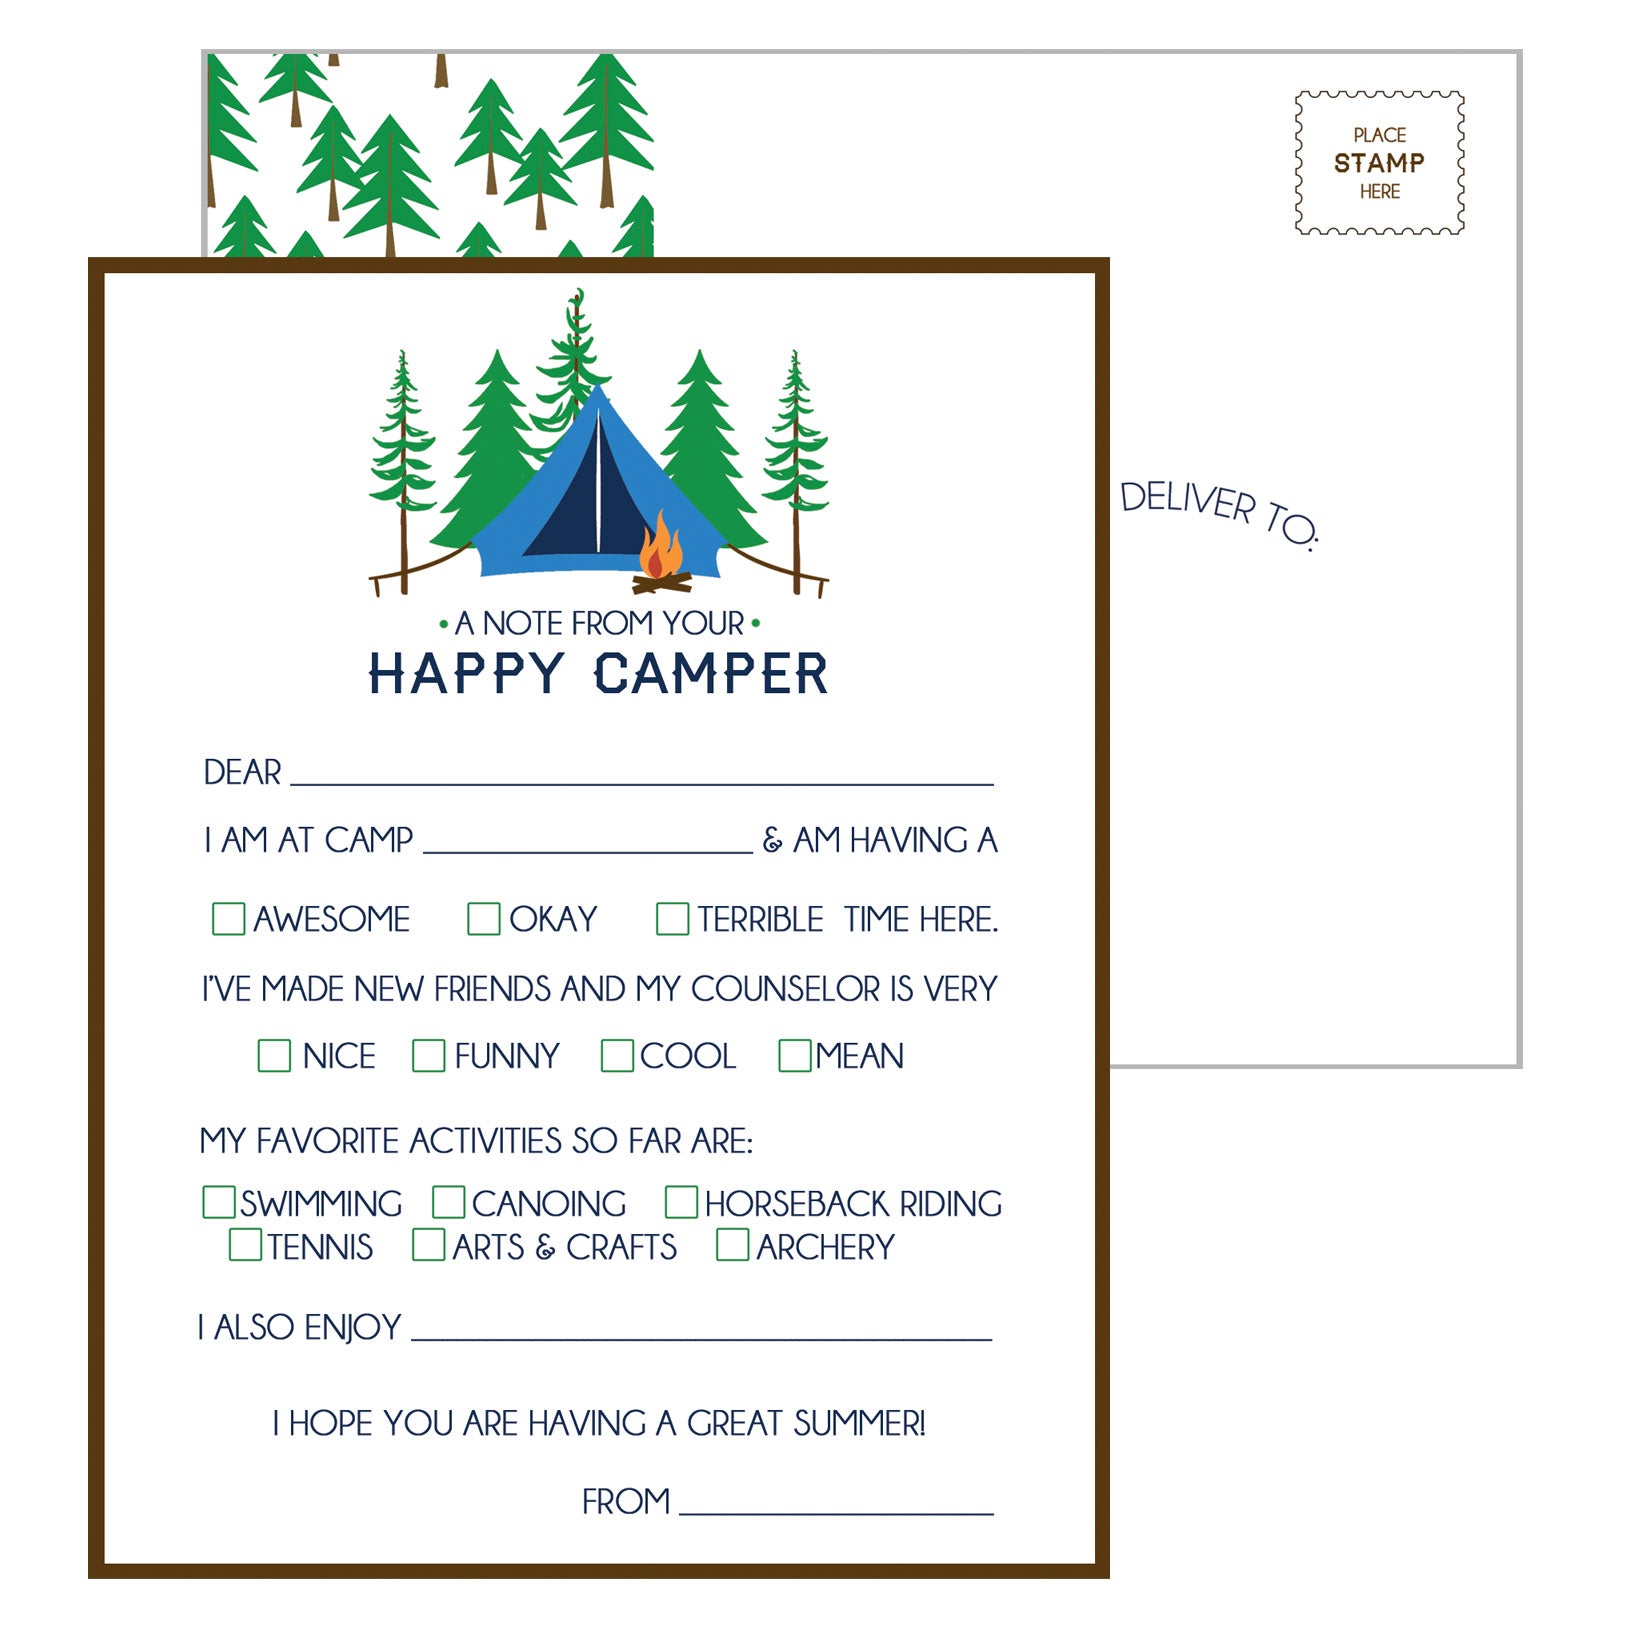 Happy Camper Postcards | Set of 25